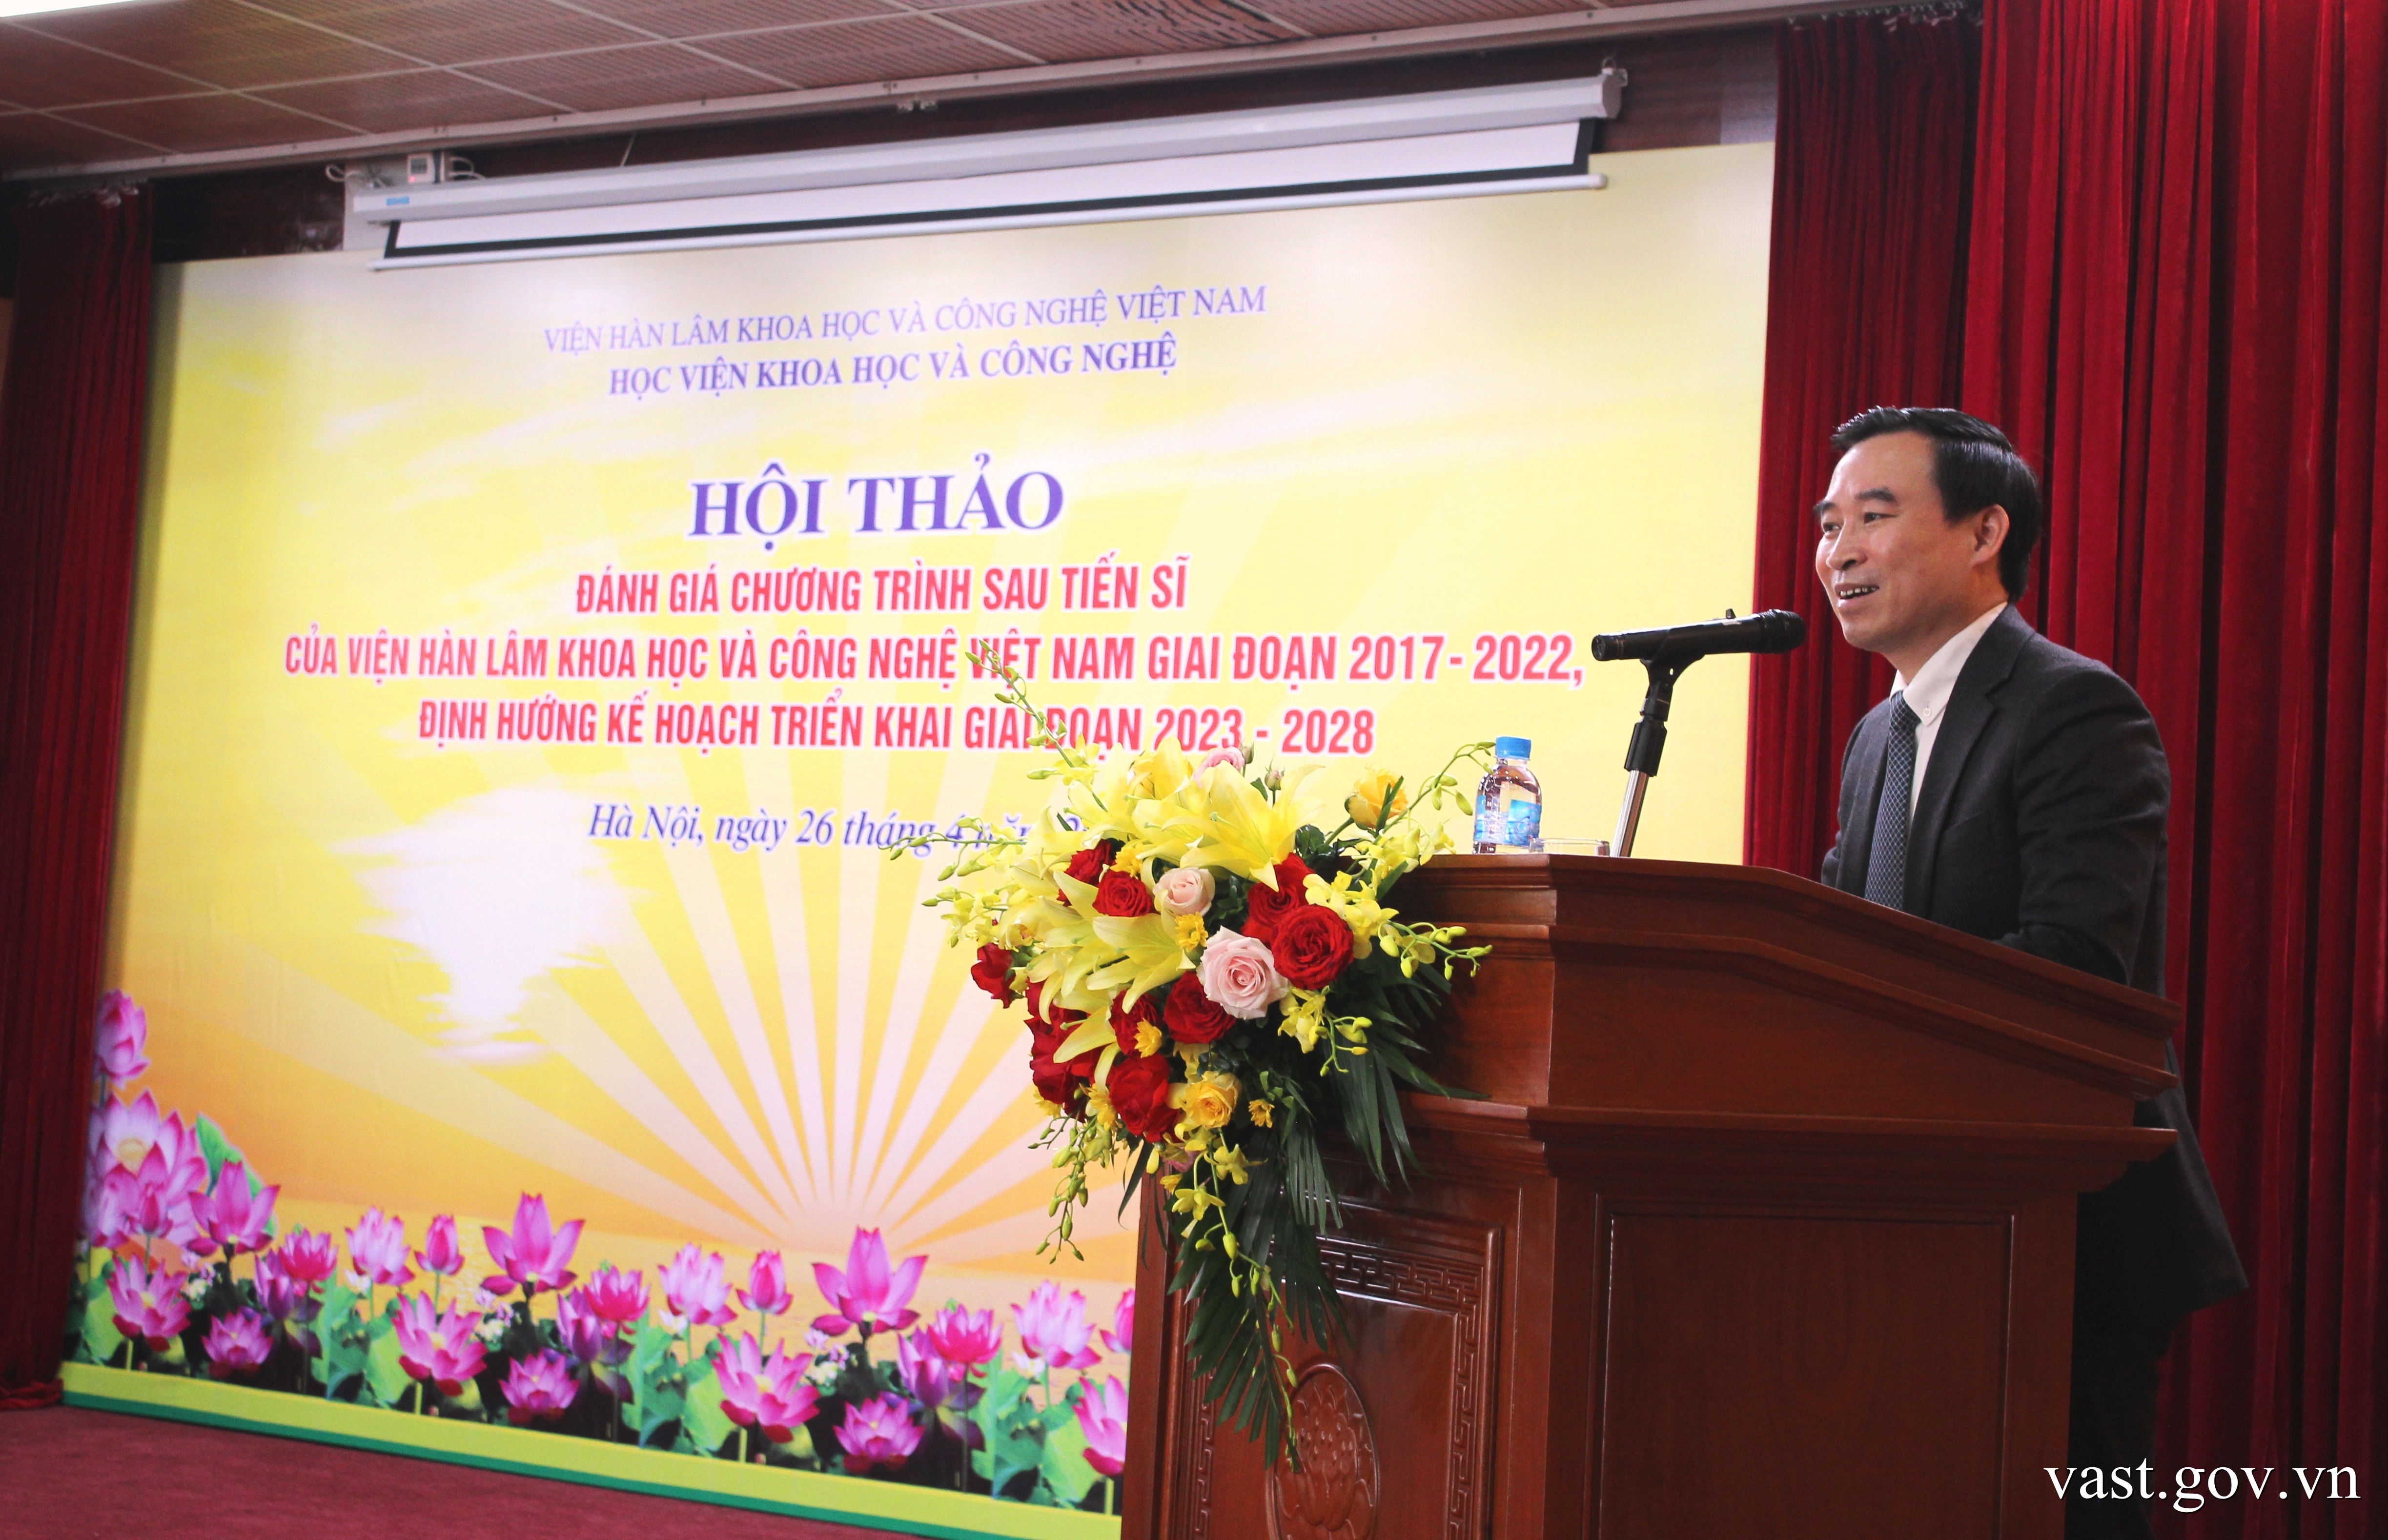 Tổng kết Chương trình sau tiến sĩ của Viện Hàn lâm Khoa học và Công nghệ Việt Nam giai đoạn 2017-2022, định hướng kế hoạch triển khai giai đoạn 2023-2028